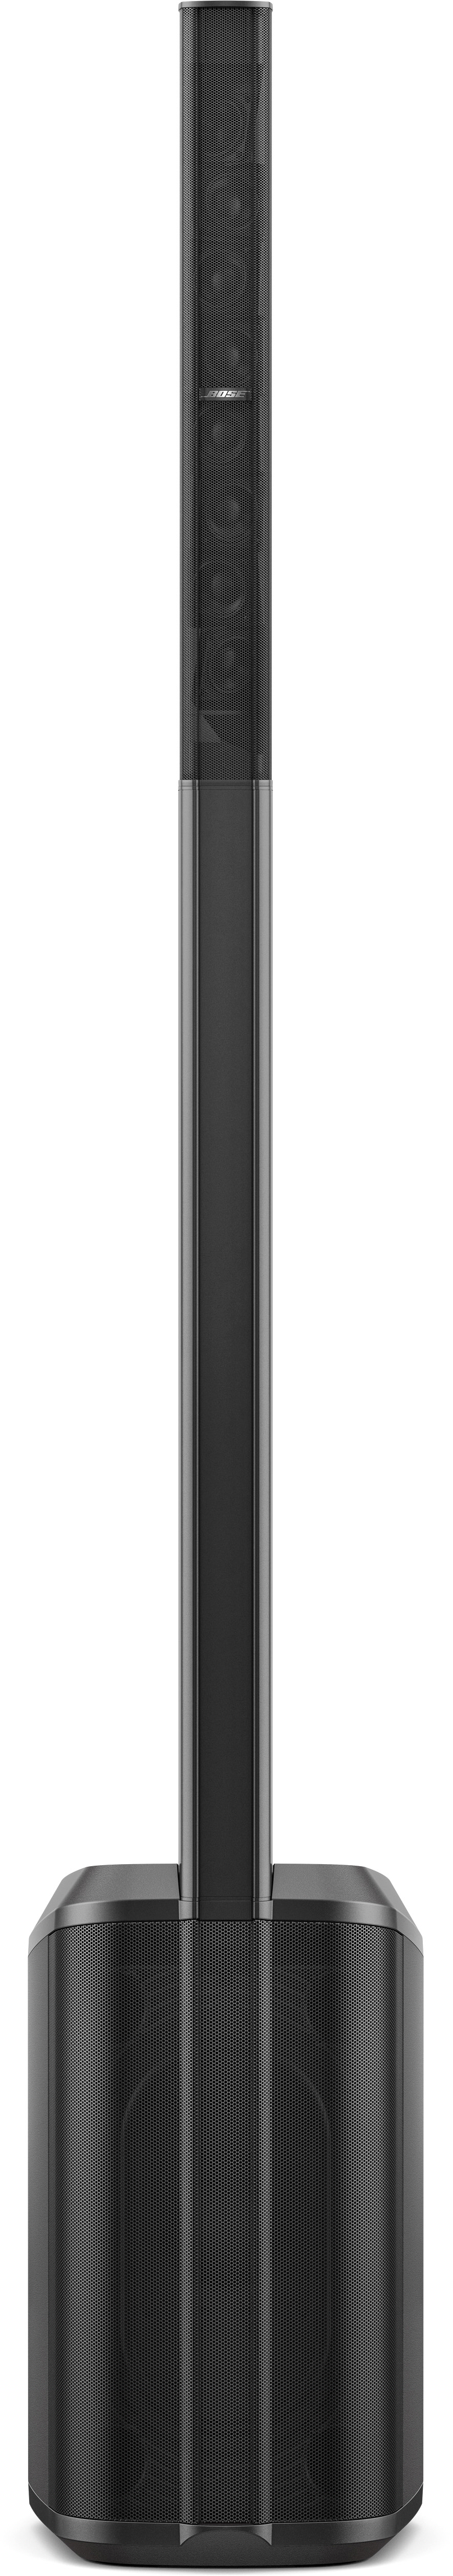 Bose L1 Pro8 Säulensystem - Ausstellungsstück